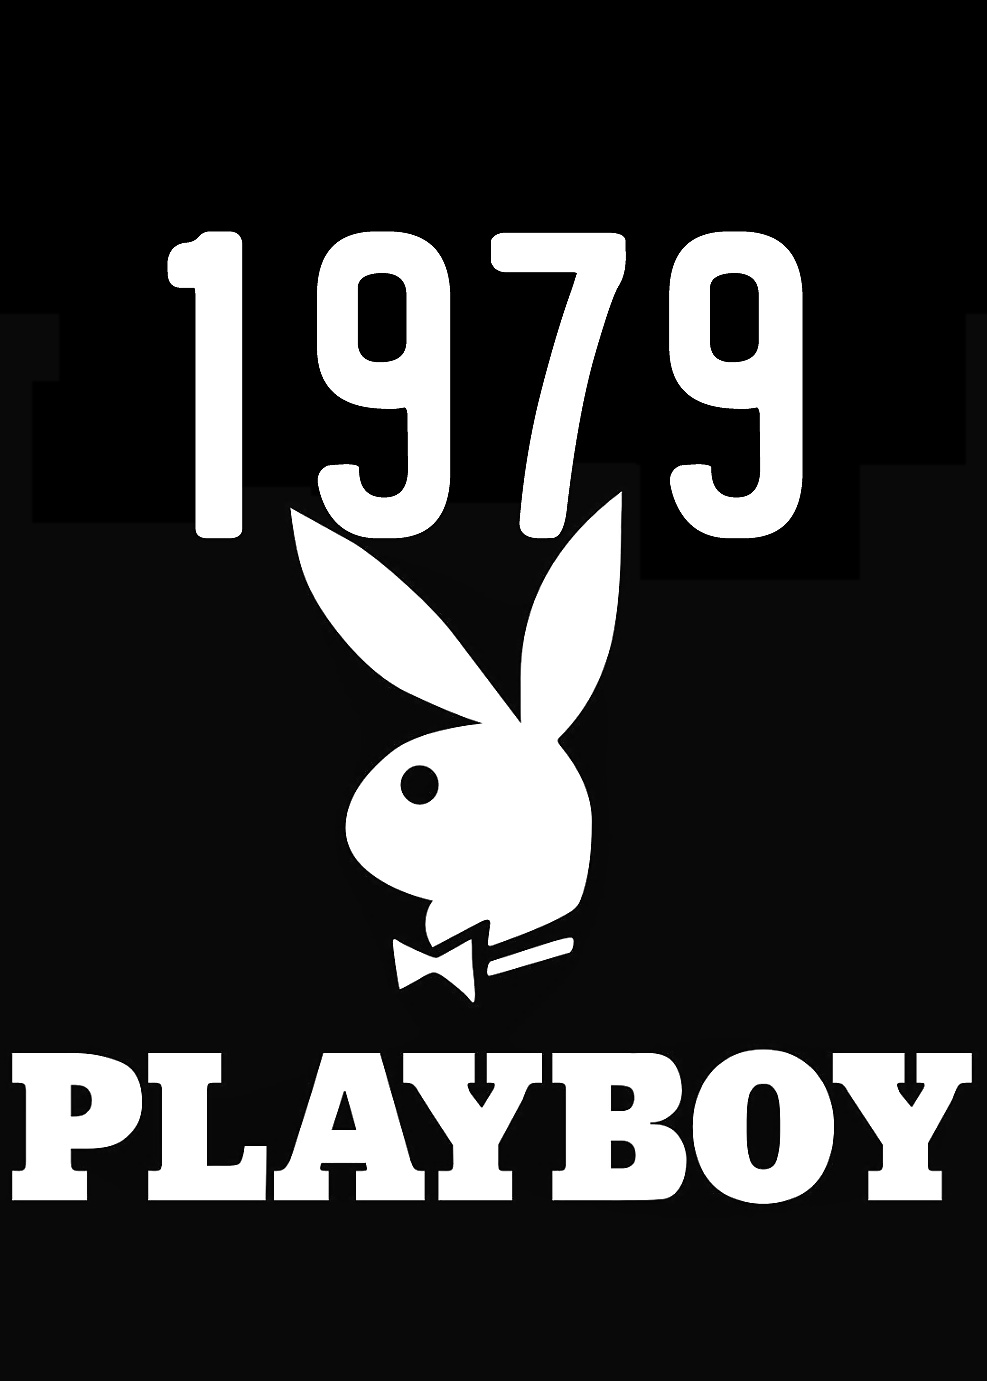 Playboy Magazine Meilleur De 1979 Ultra #40205316